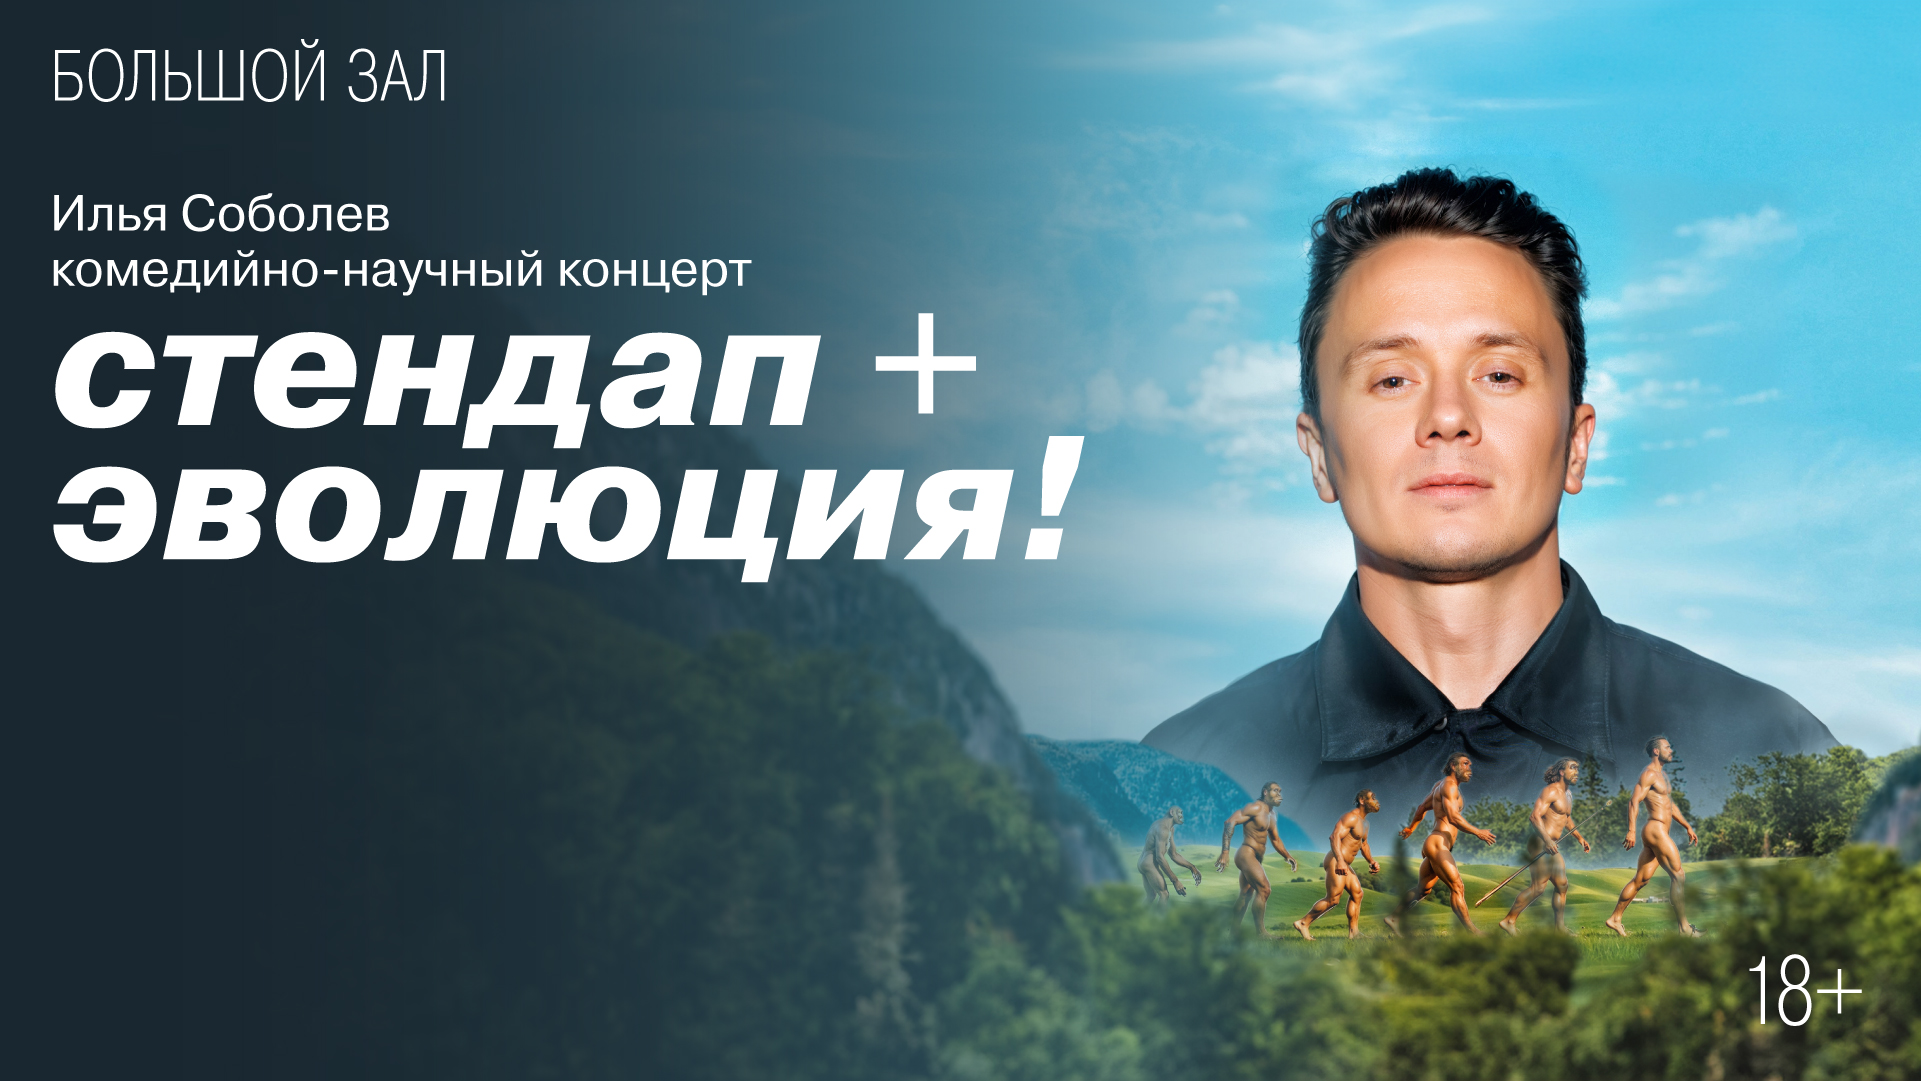 Илья Соболев<br>Комедийно-научный концерт «Стендап + эволюция!»